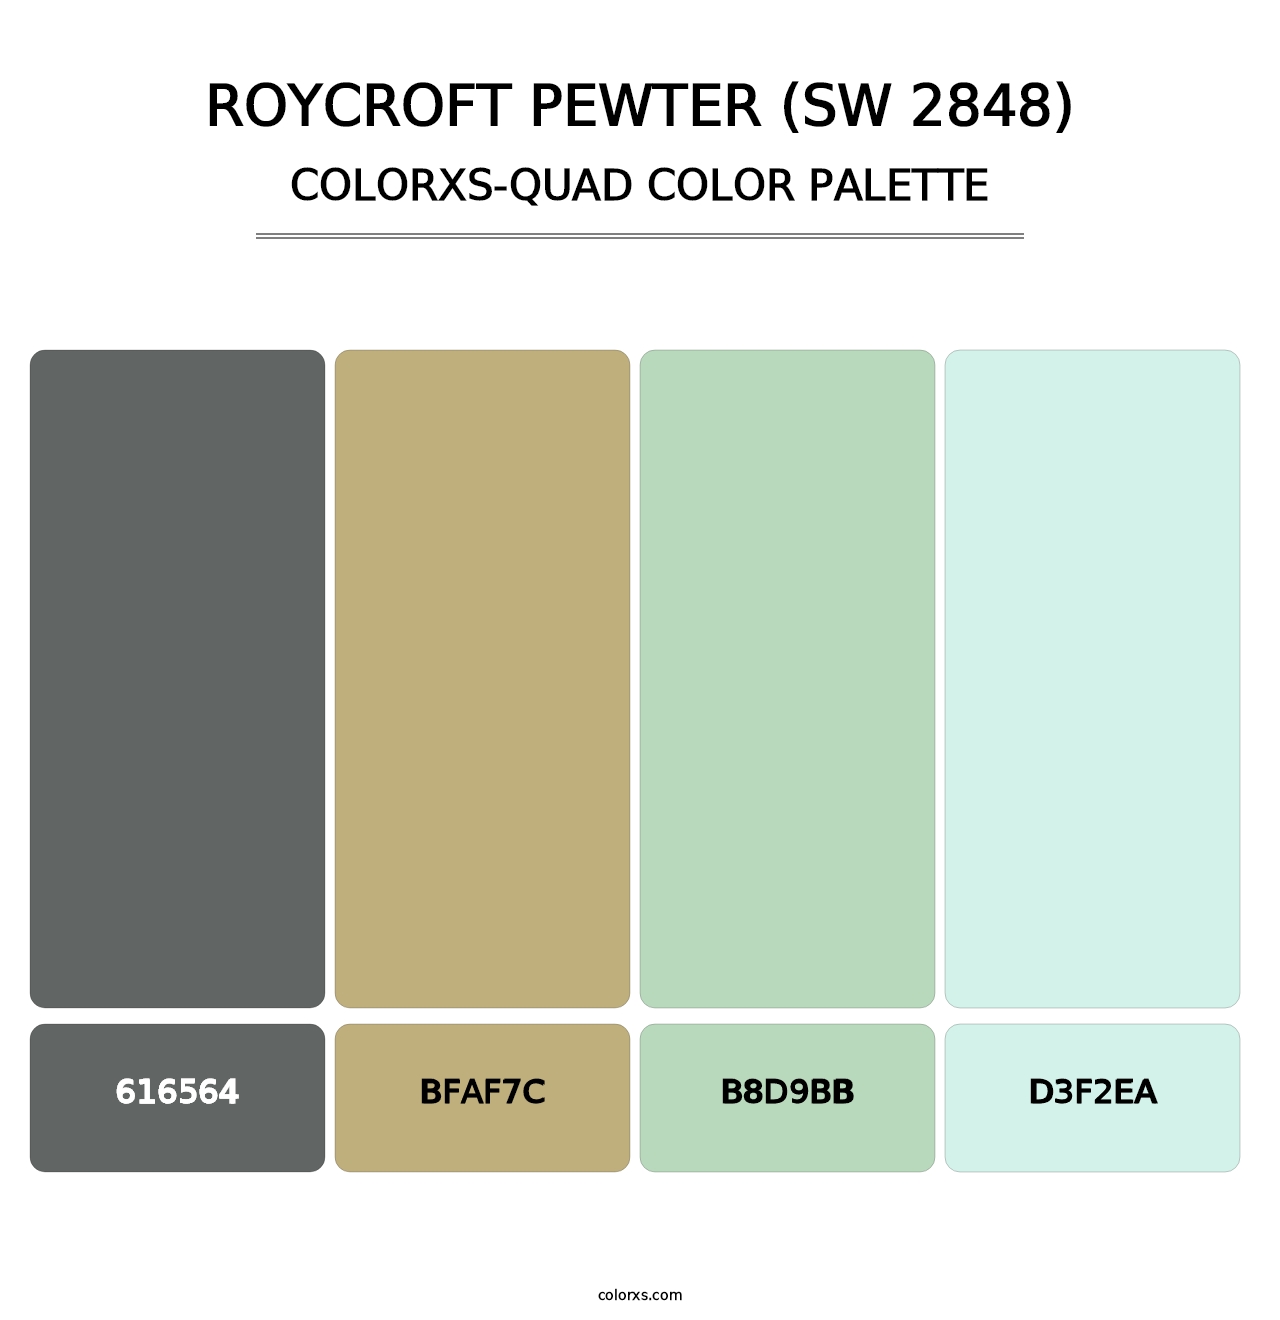 Roycroft Pewter (SW 2848) - Colorxs Quad Palette